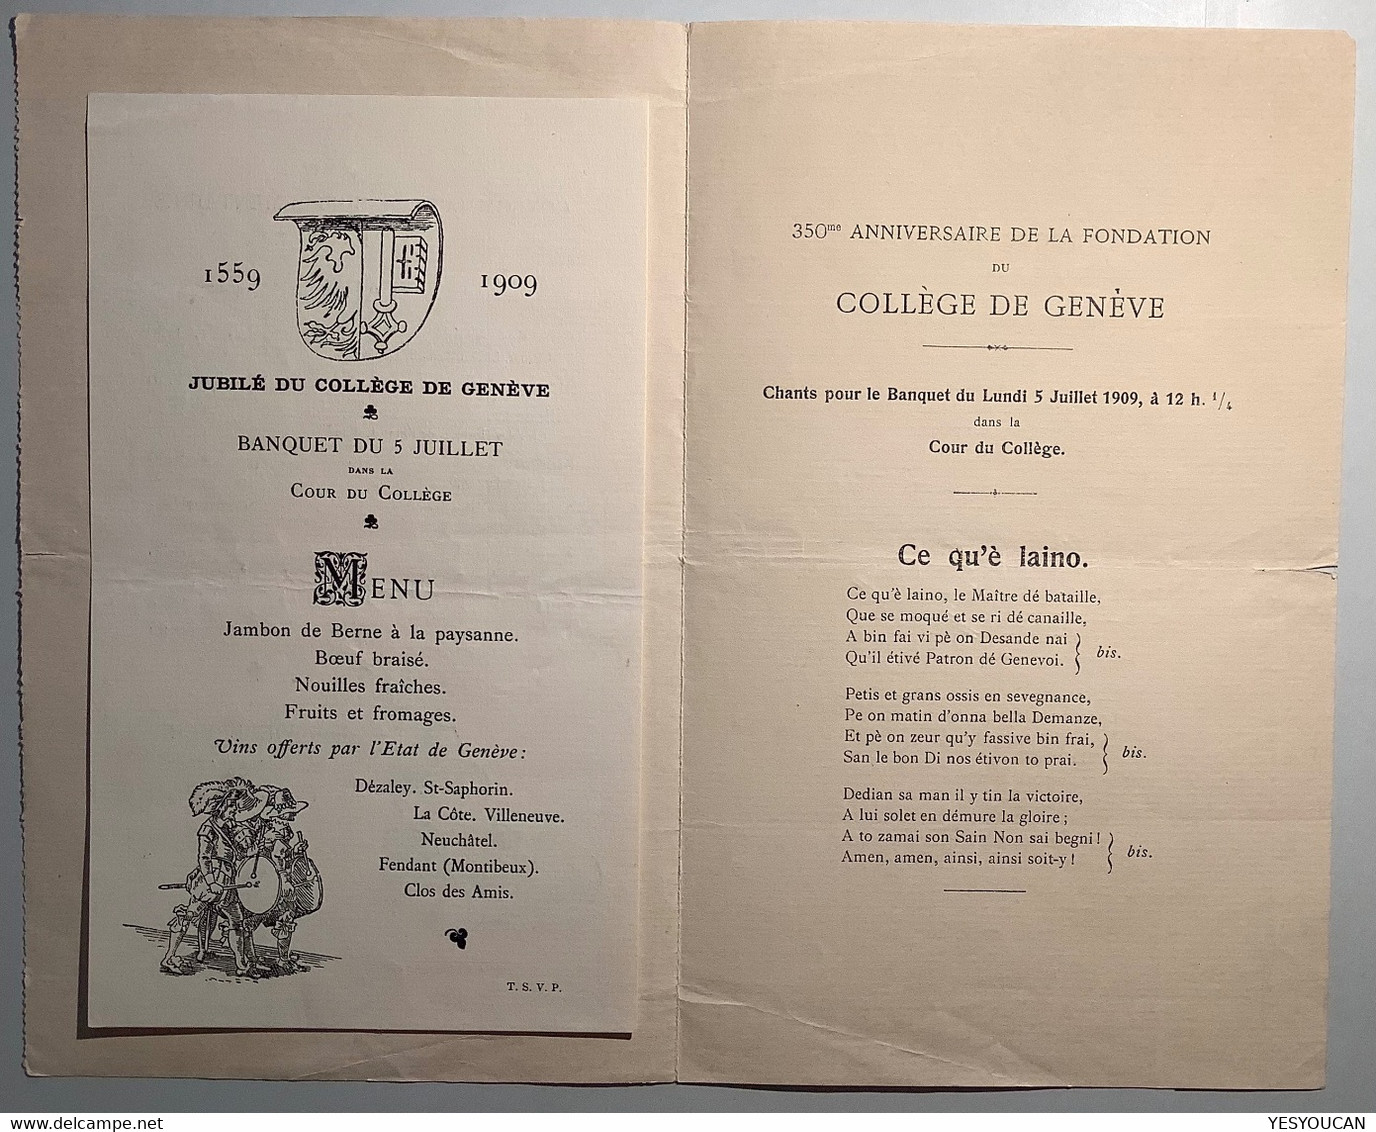 Jubilé Du Collége De Genève 1559-1909 Carte Du Menu Du Banquet Jean Wiederkehr Restaurateur (Schweiz Suisse école - Diplomas Y Calificaciones Escolares